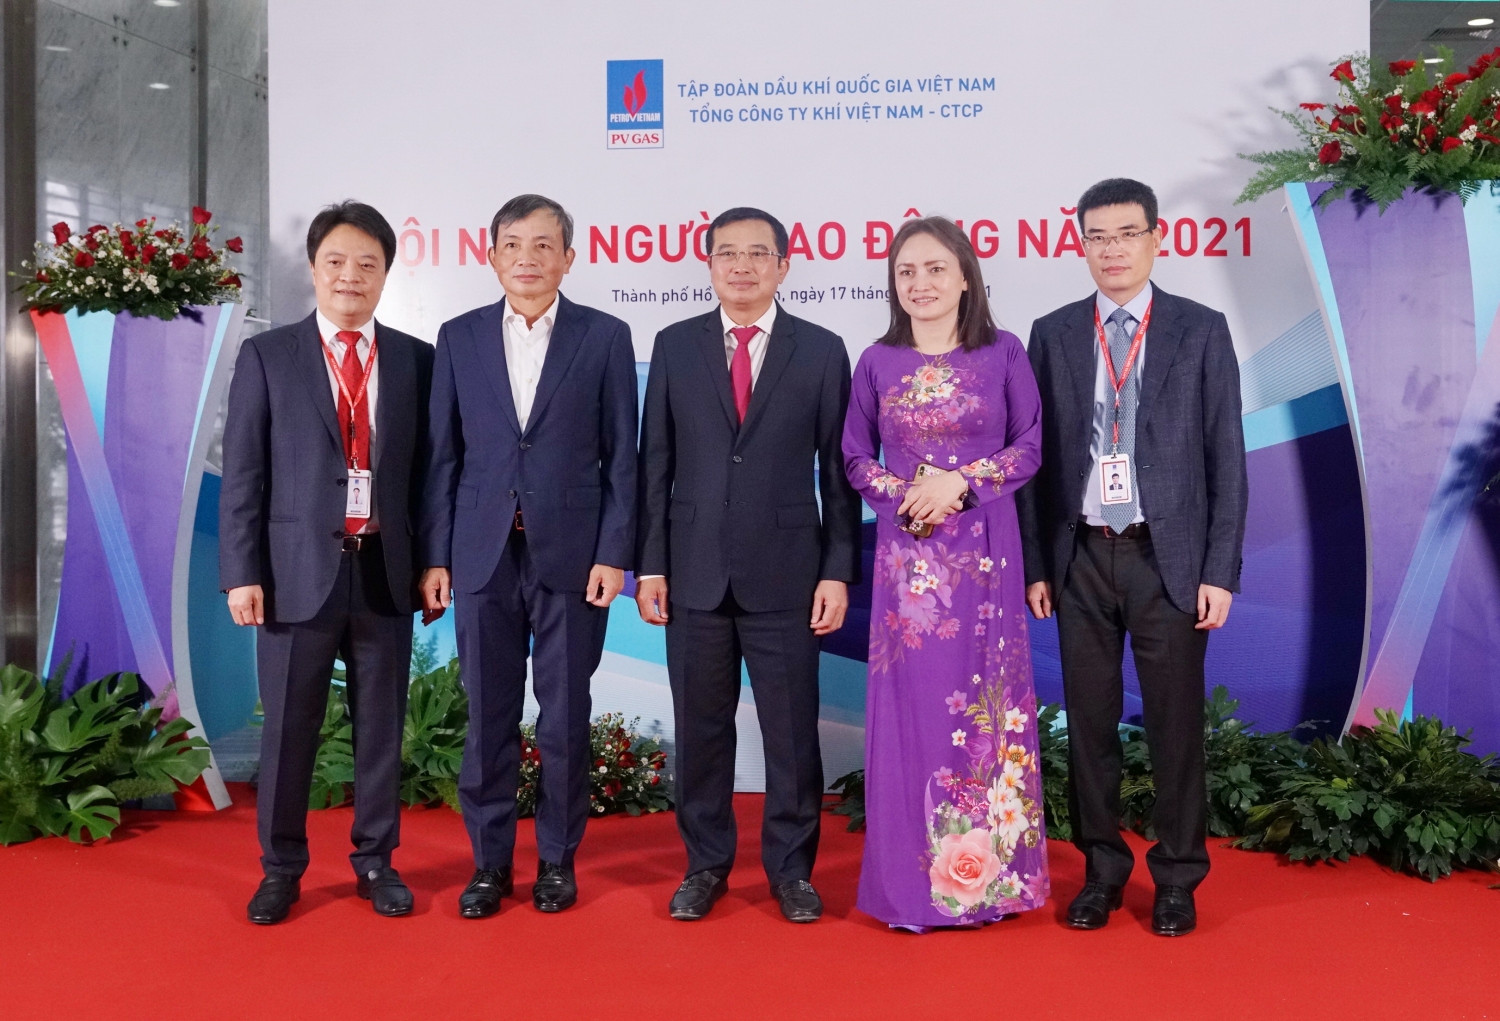 Các vị Lãnh đạo cấp cao của Tập đoàn DKVN tham dự Hội nghị NLĐ PV GAS 2021